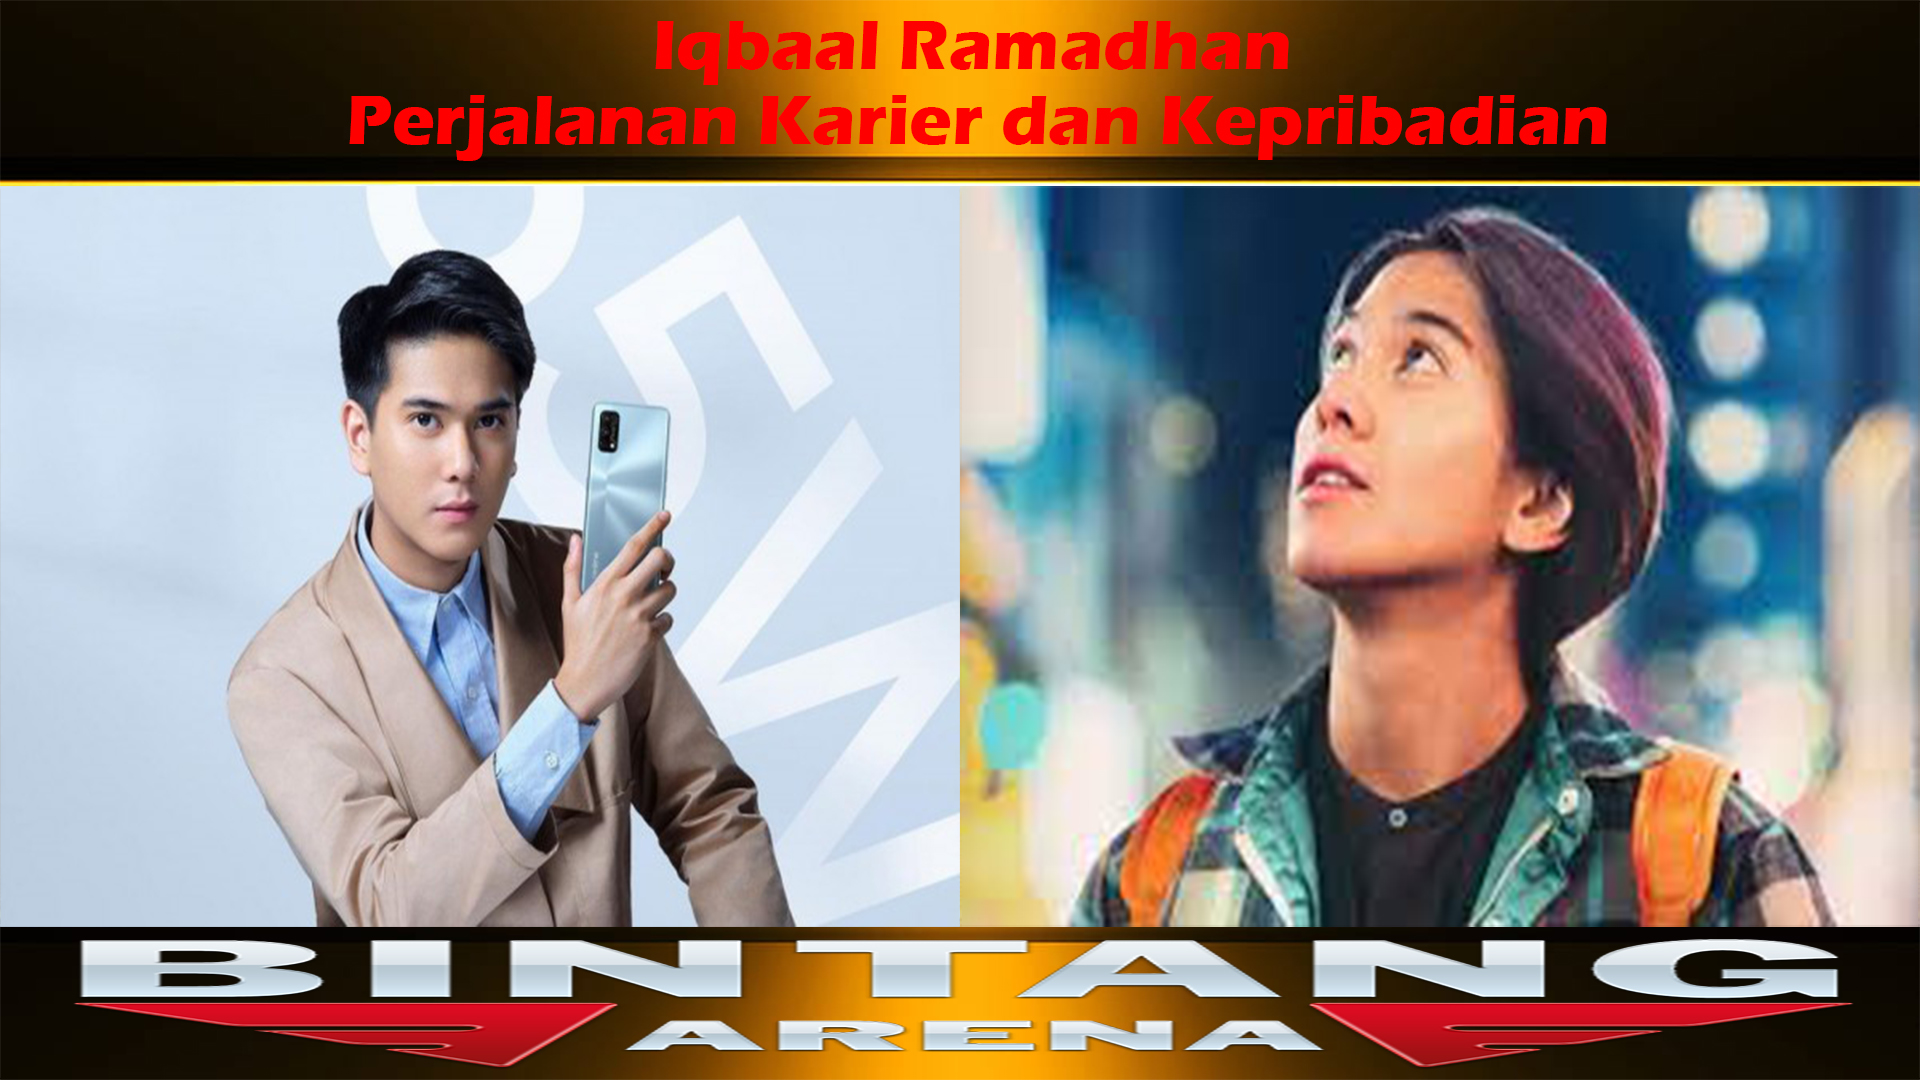 Iqbaal Ramadhan: Perjalanan Karier dan Kepribadian